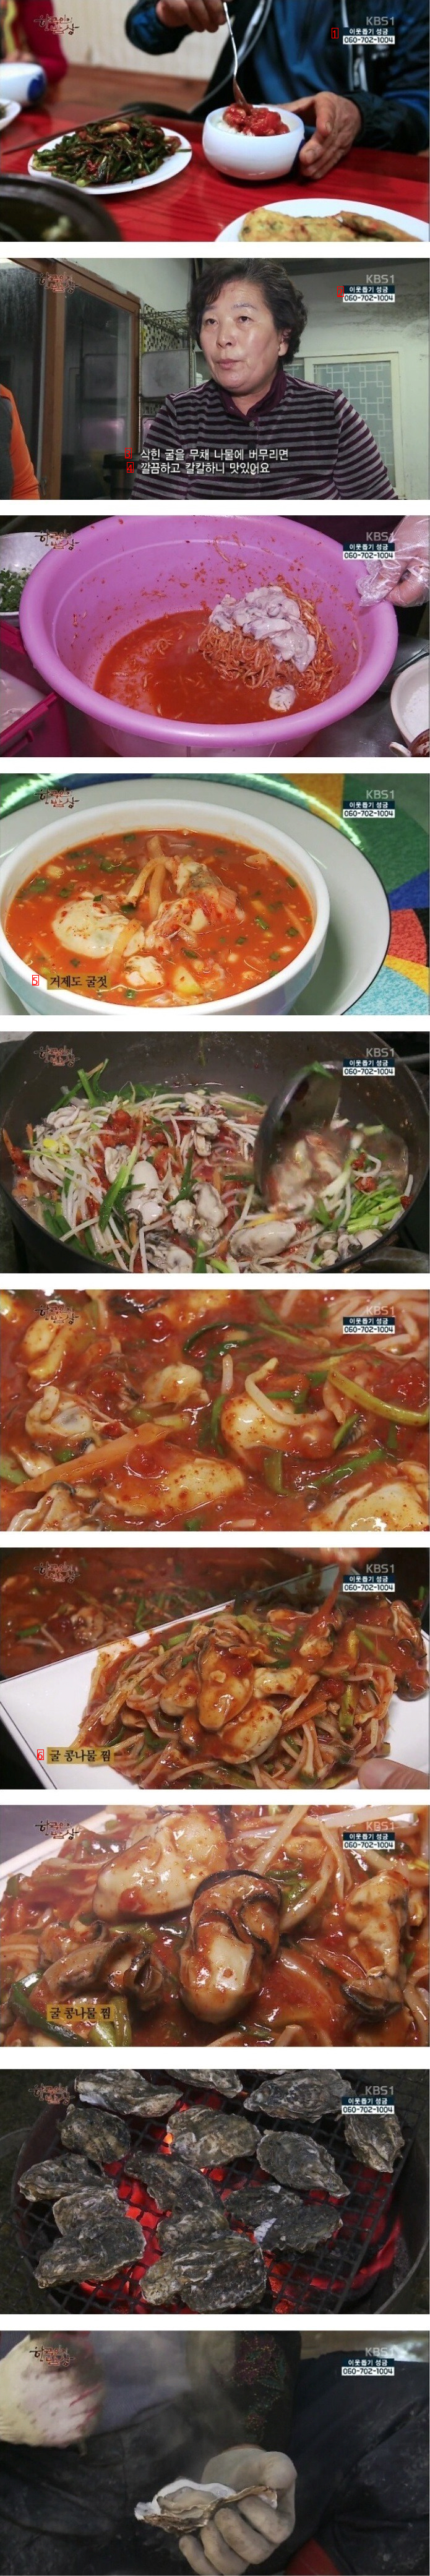 한국인의 밥상에서 최고로 호불호 갈렸던 밥상